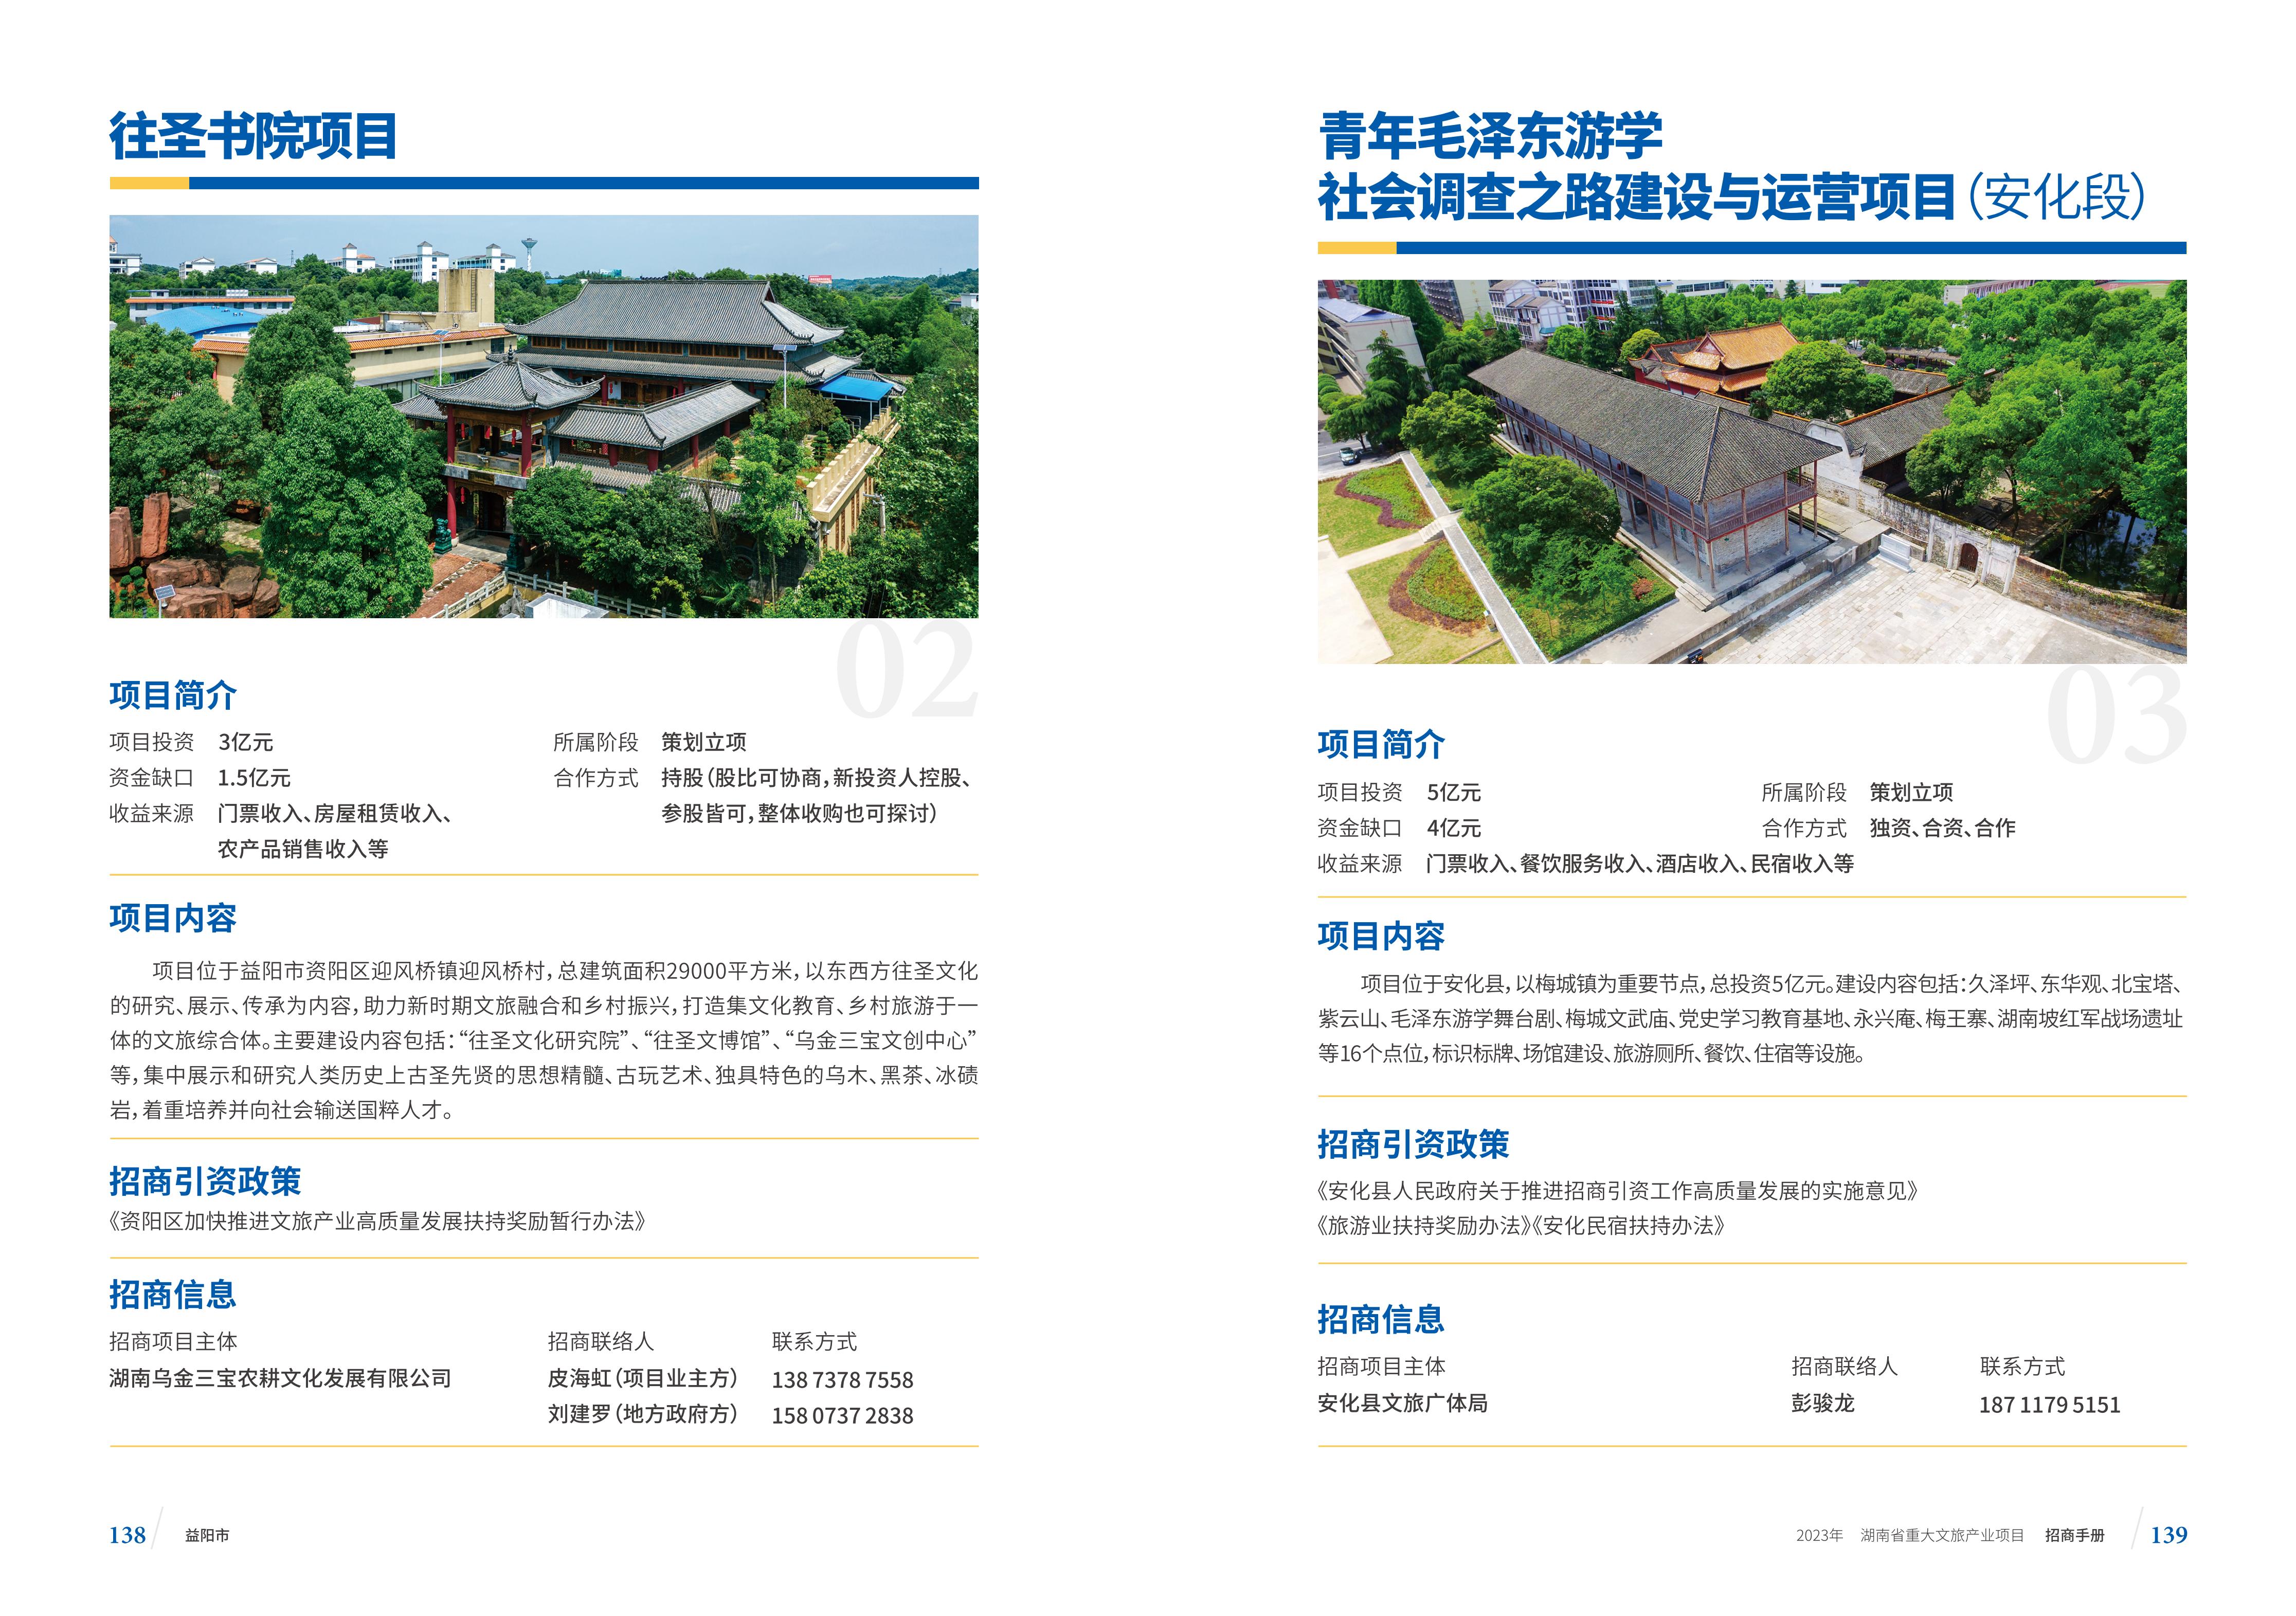 湖南省重大文旅产业项目招手册线上链接版_77.jpg